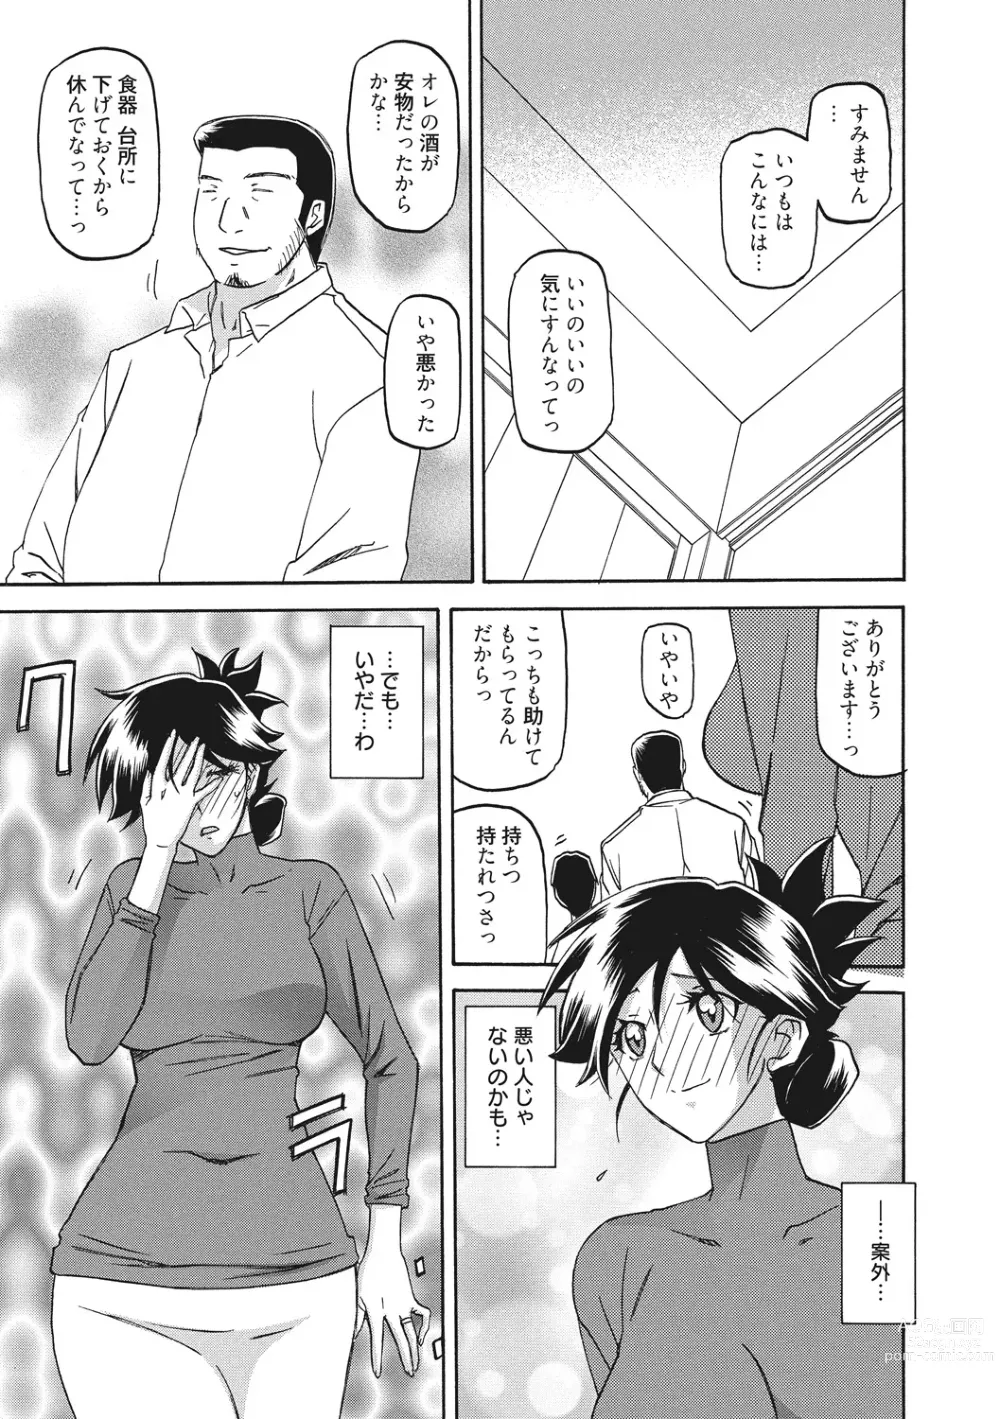 Page 19 of manga Gekkakou no Ori